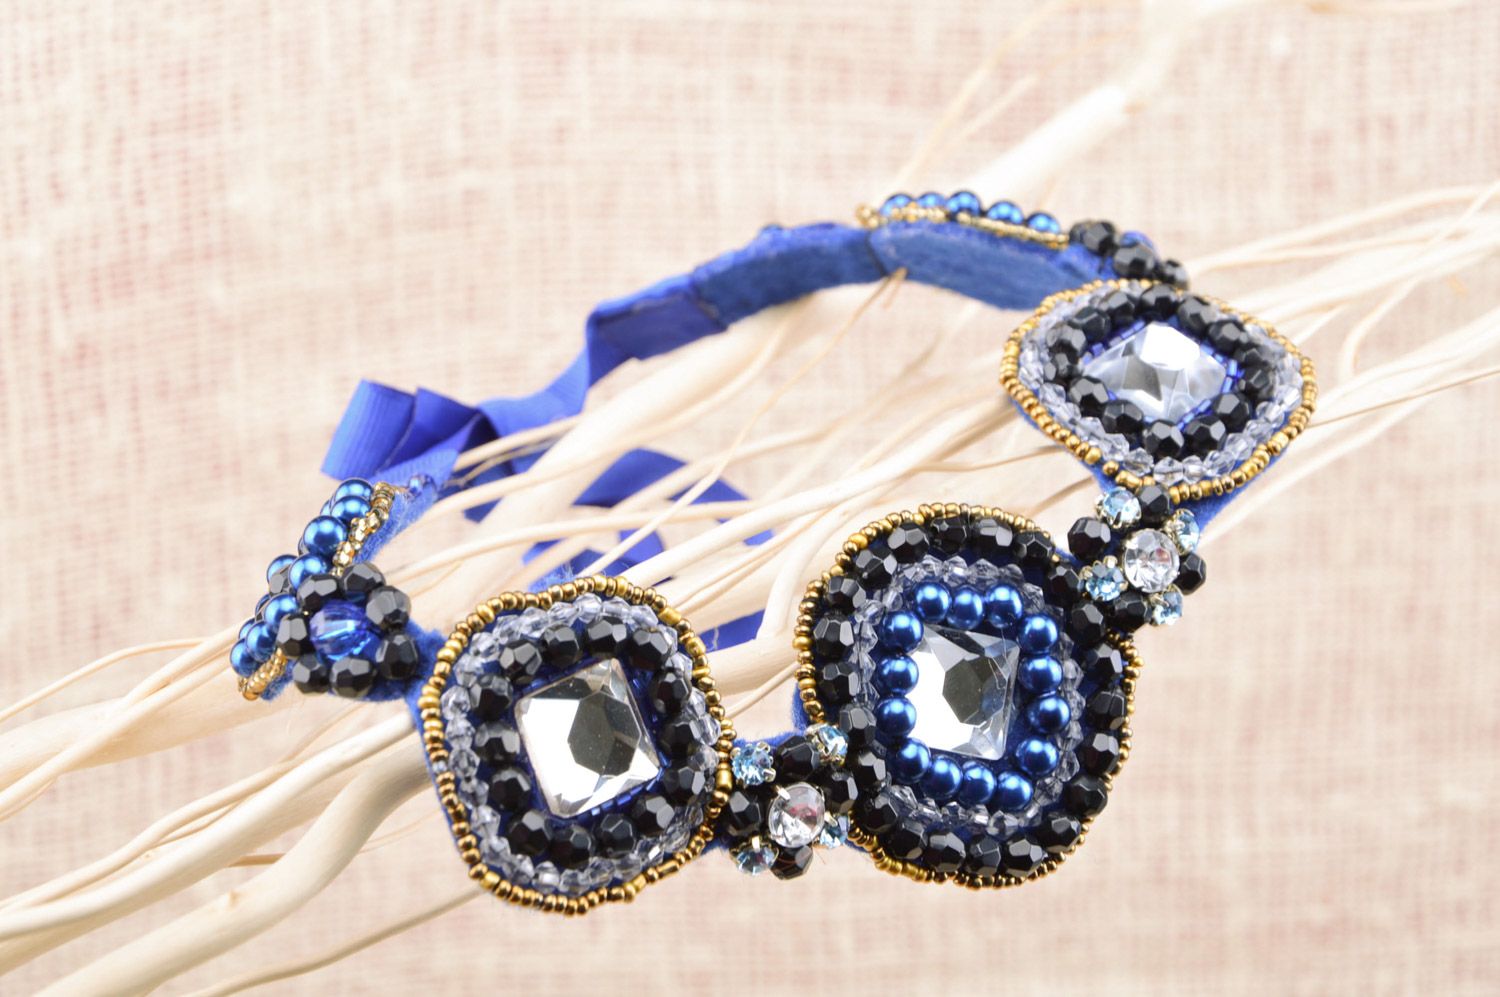 Grand collier bleu feutre perles fantaisie fait main Mille et Une Nuits photo 5